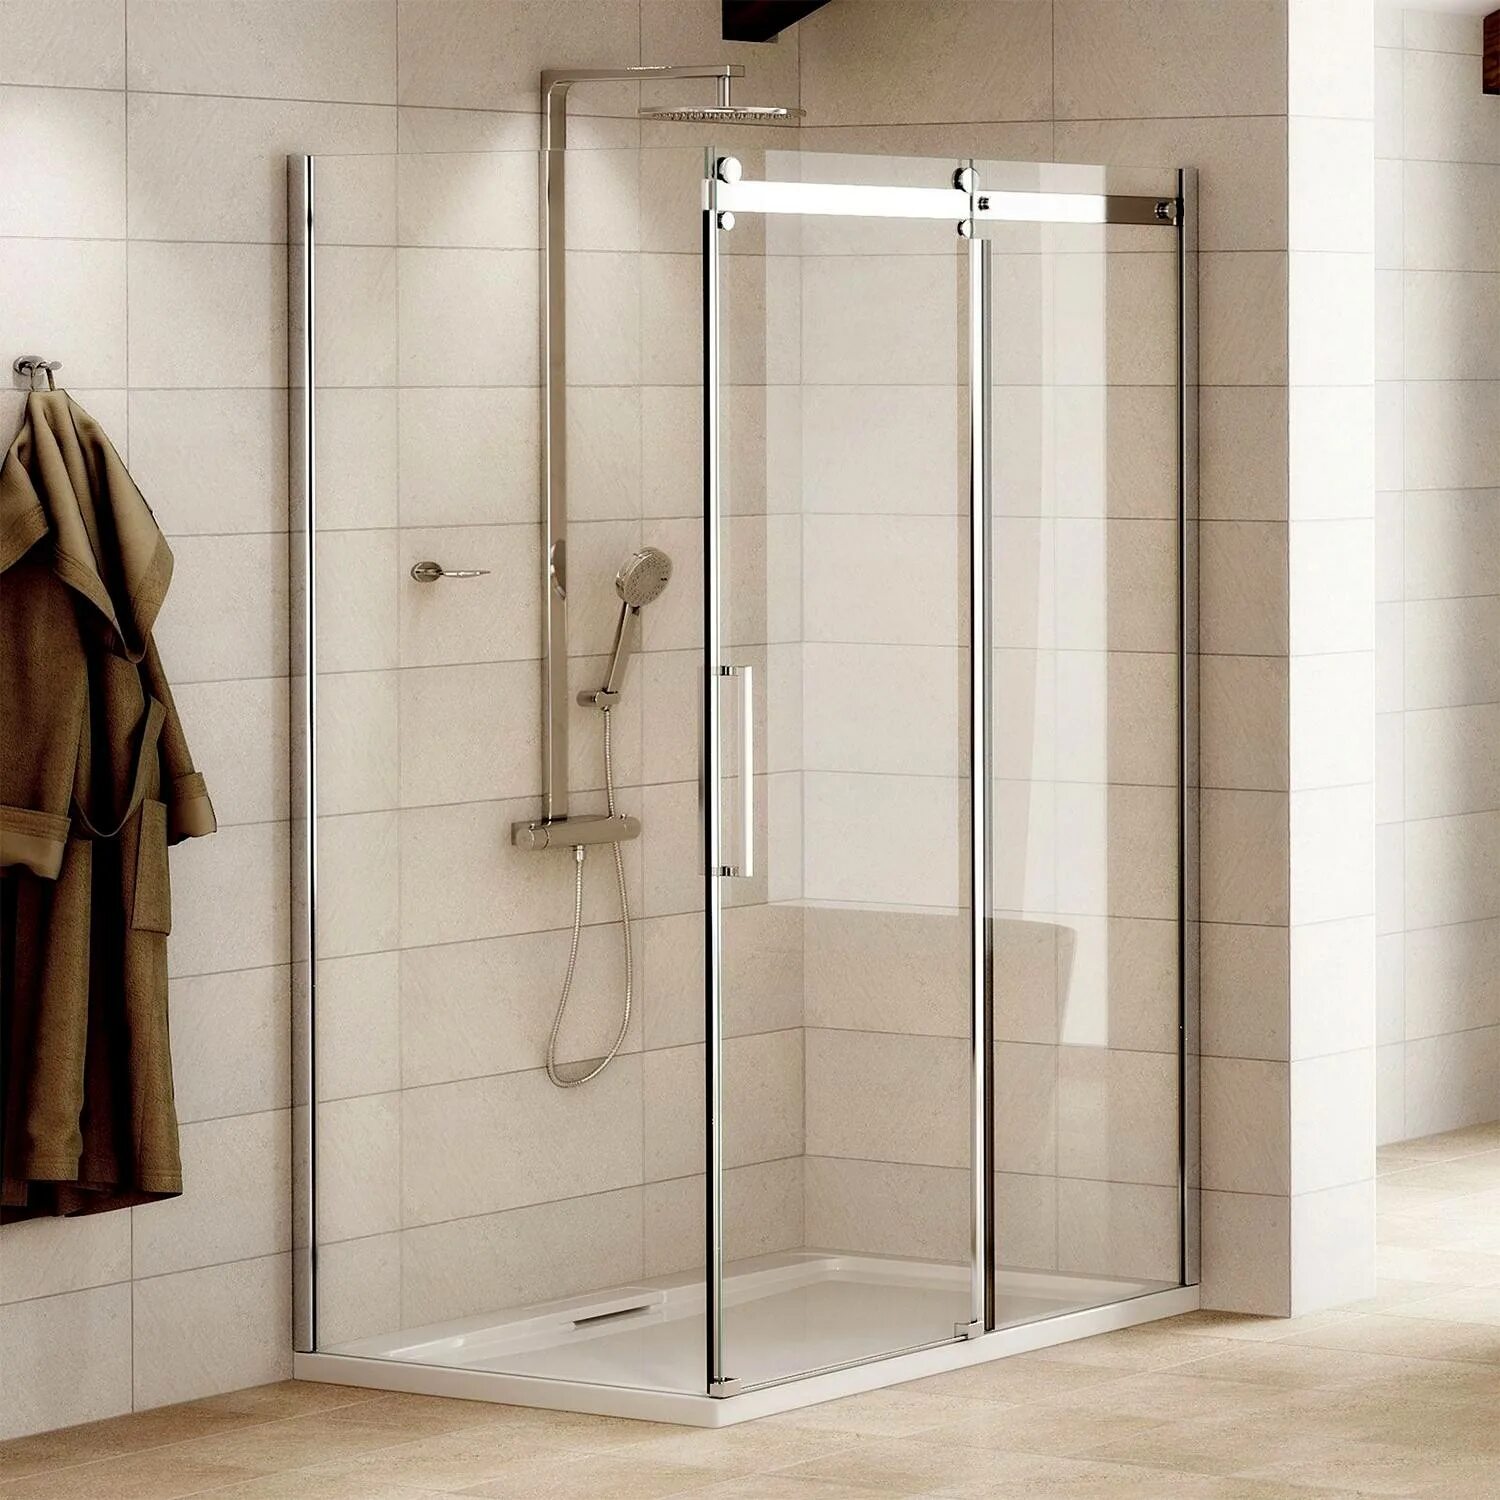 Shower Enclosure Doors. 1200 Shower Room with Glass Sliding Door.